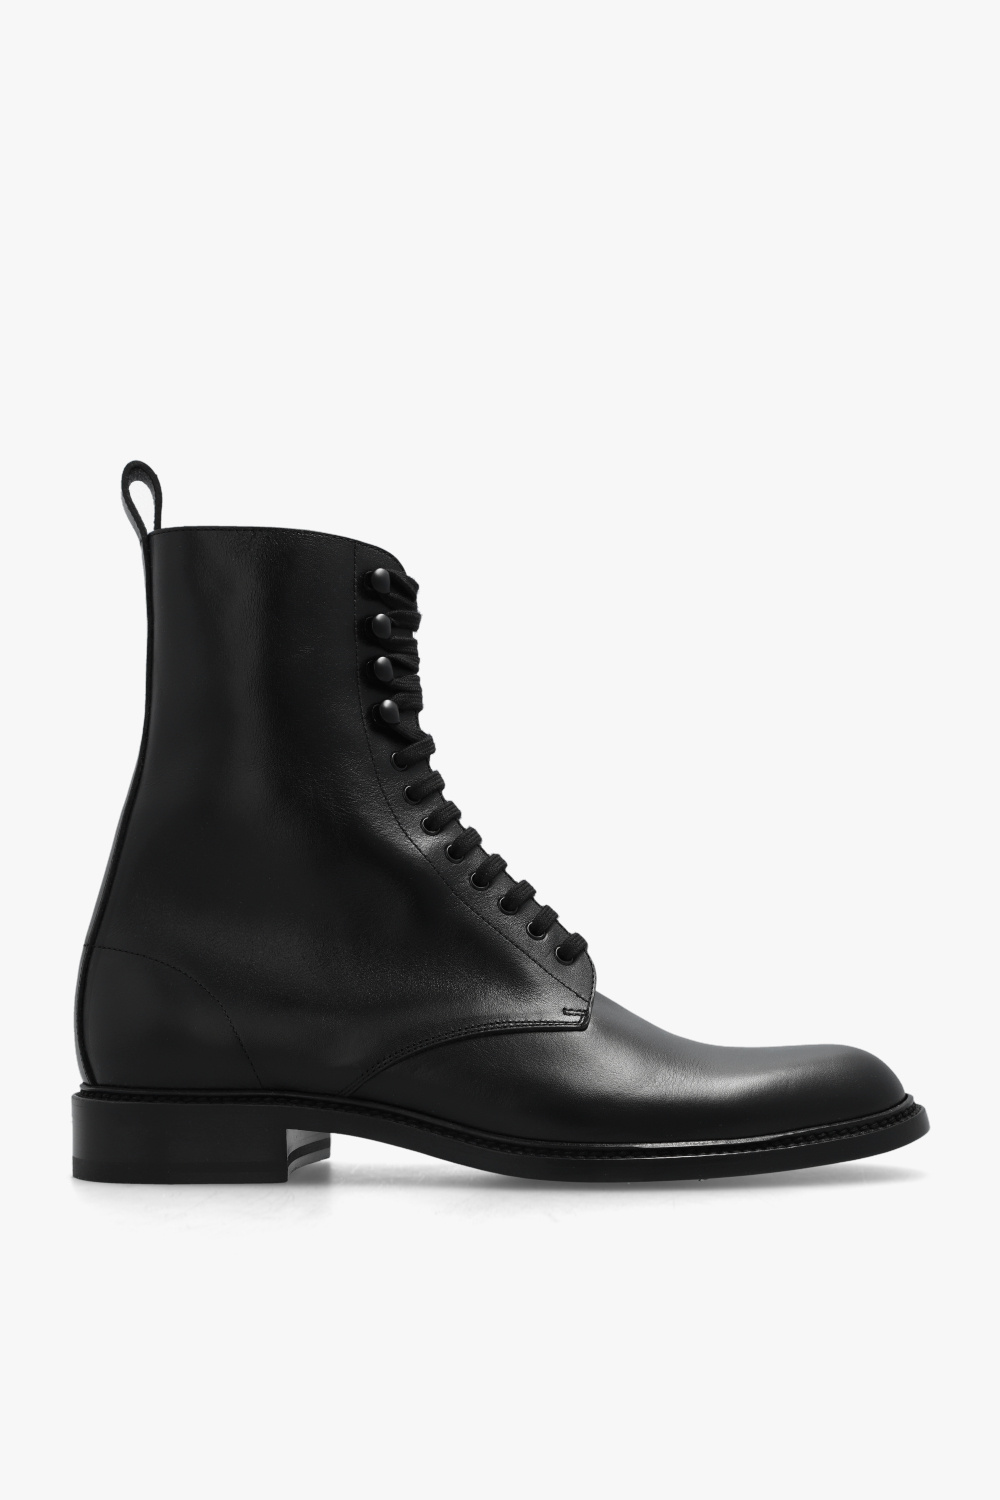 Saint Laurent ‘Army’ shoes